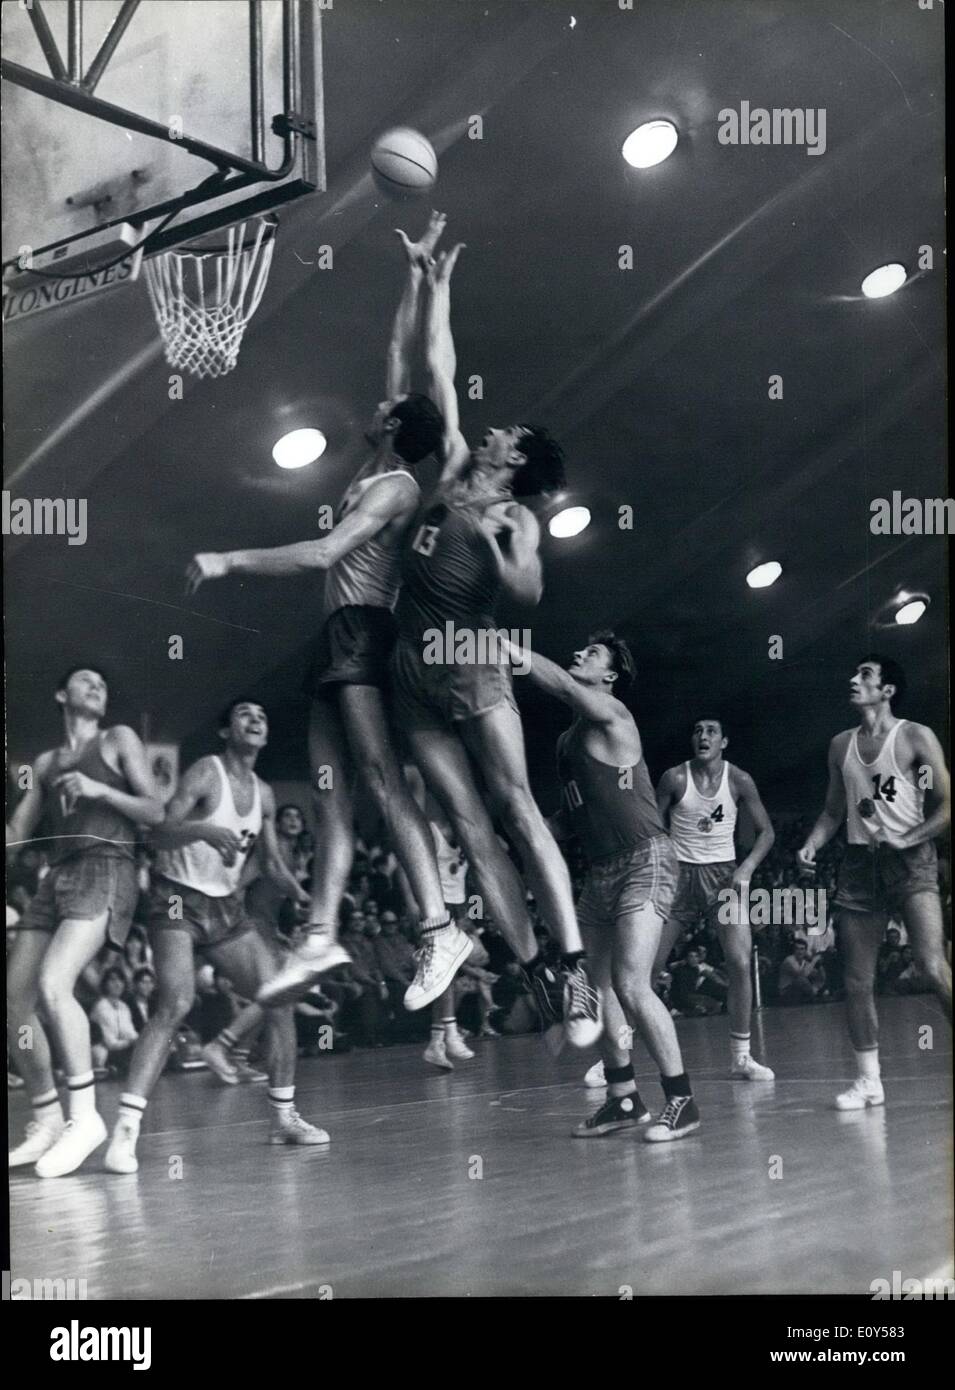 08 août 1968 - 9e Festival Mondial de la jeunesse et des étudiants à Sofia : Finales de la tournoi de basket-ball. Moment du match France-URSS.hommes score 57:54. L'équipe bulgare a reçu la médaille d'or. Banque D'Images